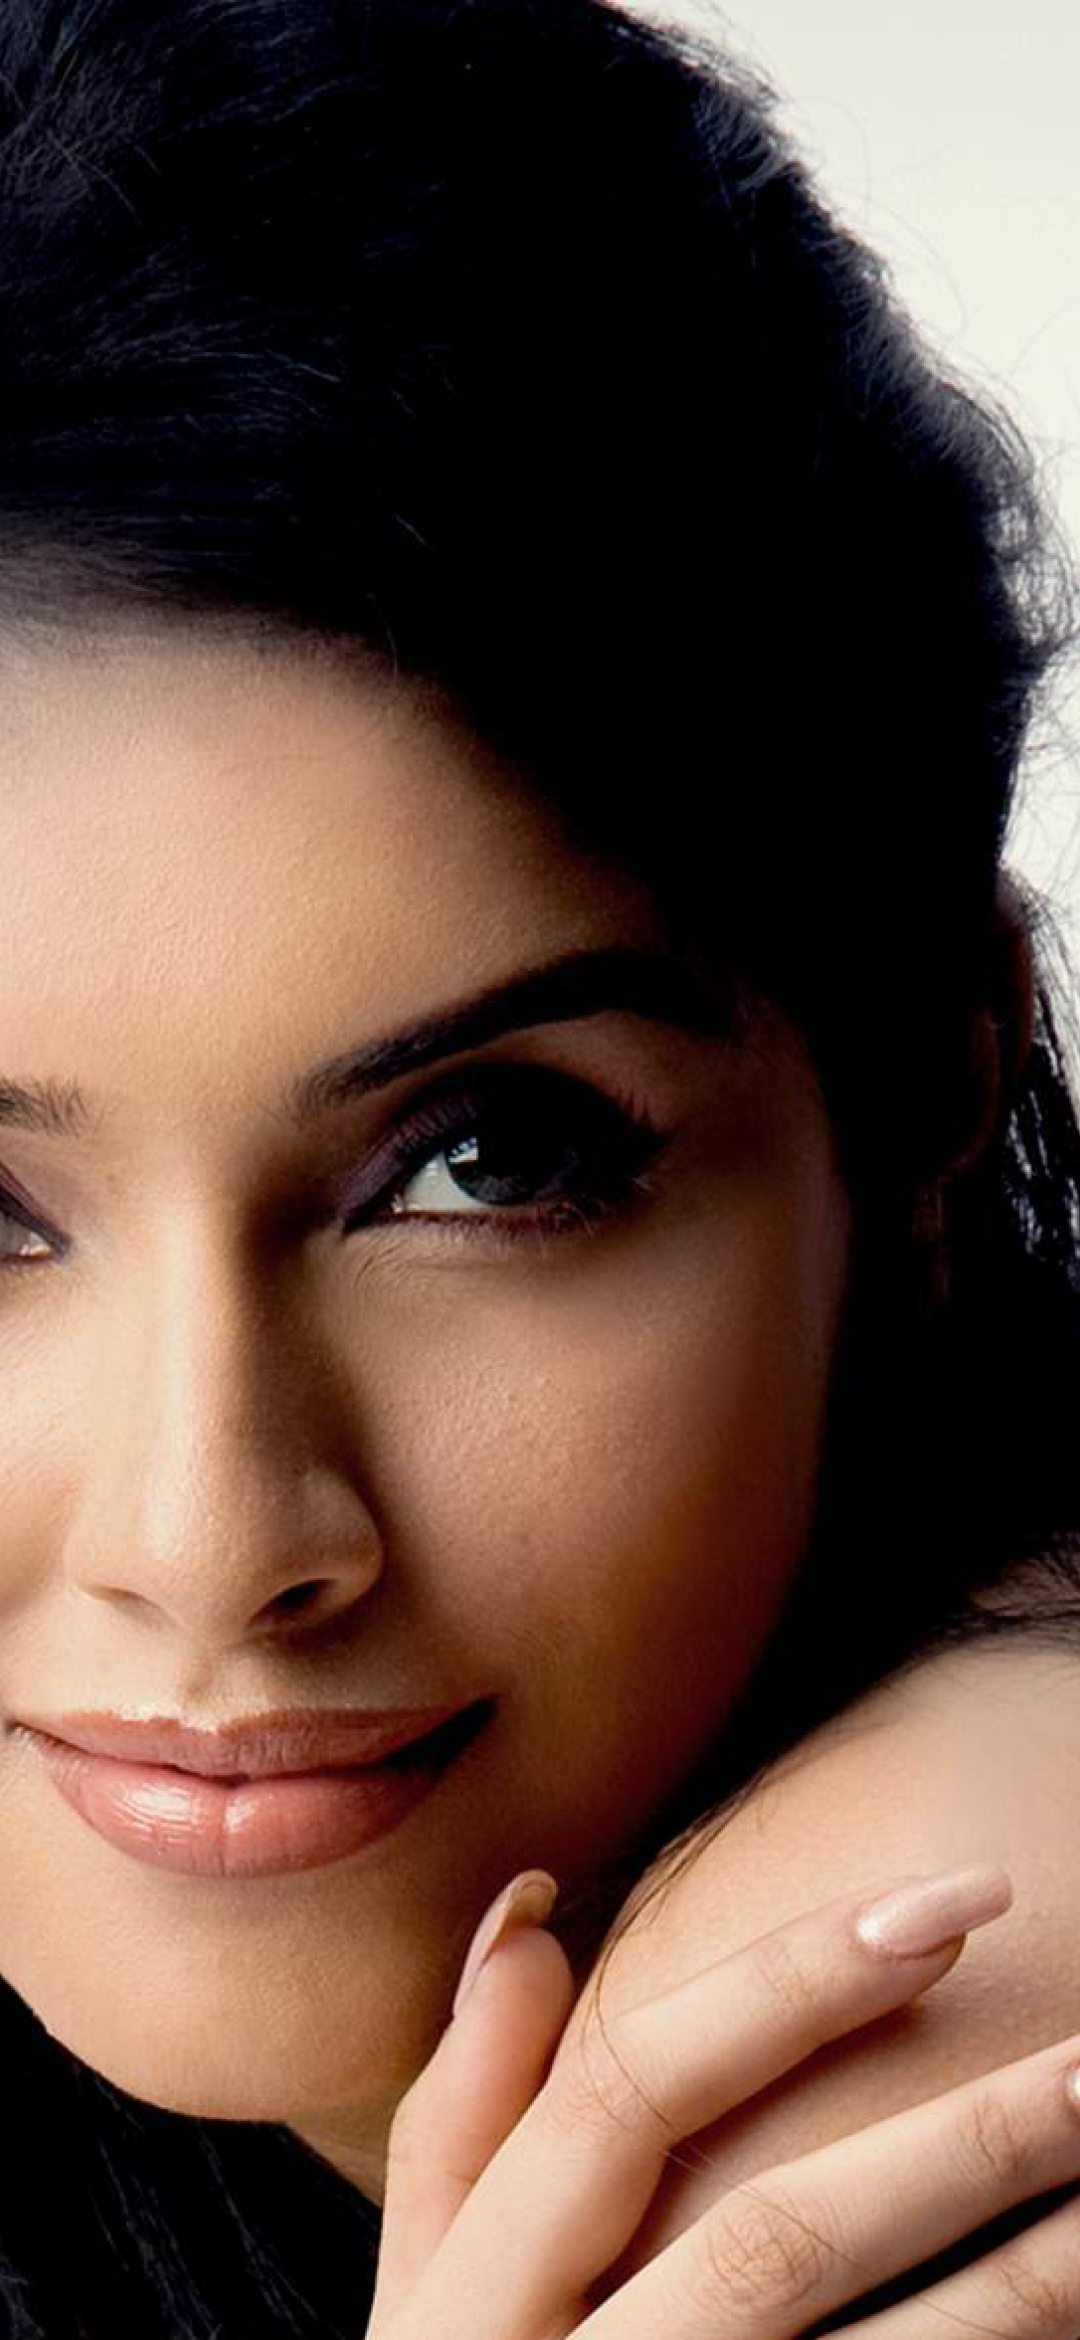 Tamil Actress Hd Photos 1080P Download : South Indian ...